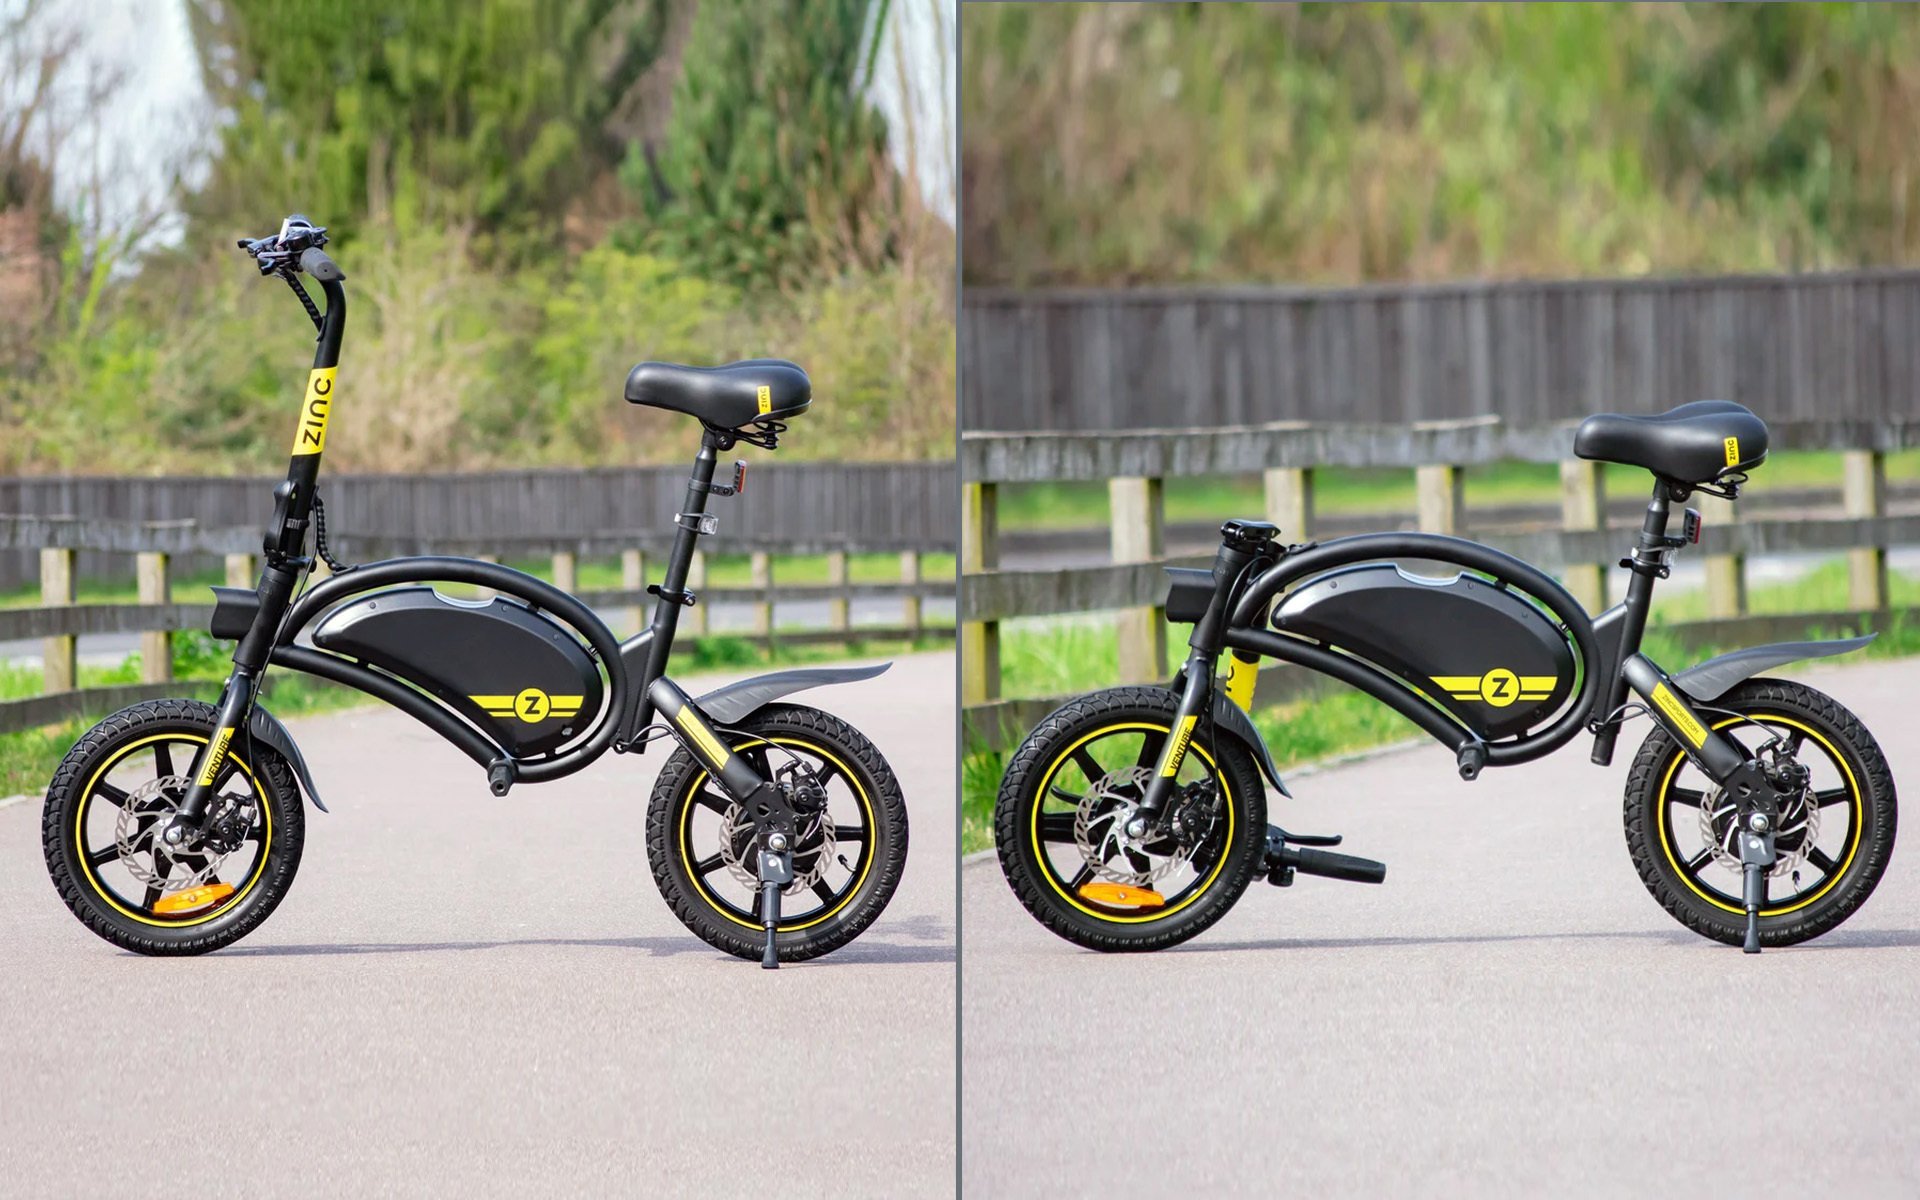 Το Zinc Venture μοιάζει με ηλεκτρικό ποδήλατο αλλά δεν είναι!